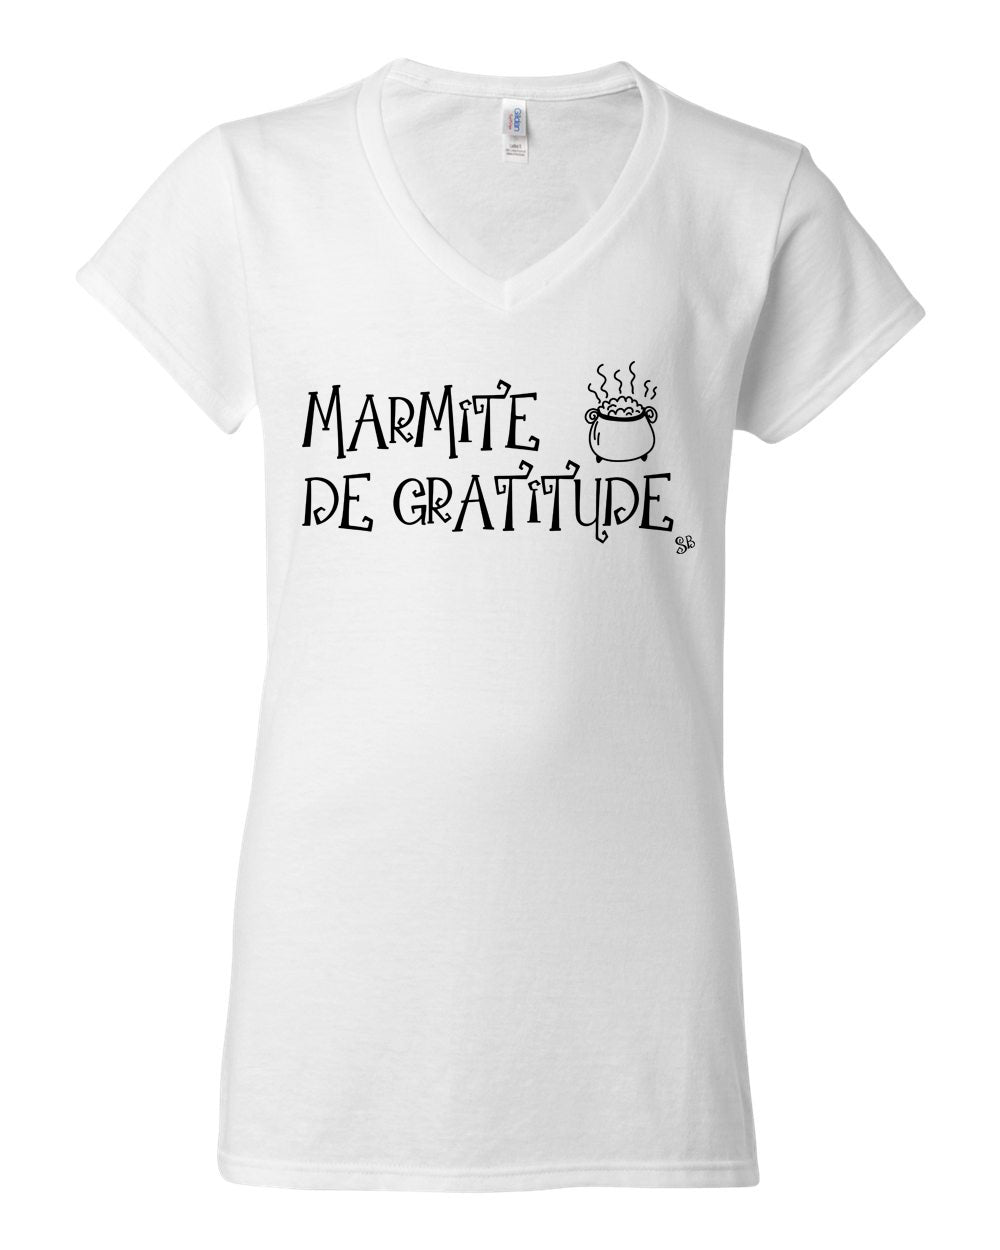 T-shirt - Marmite de gratitude